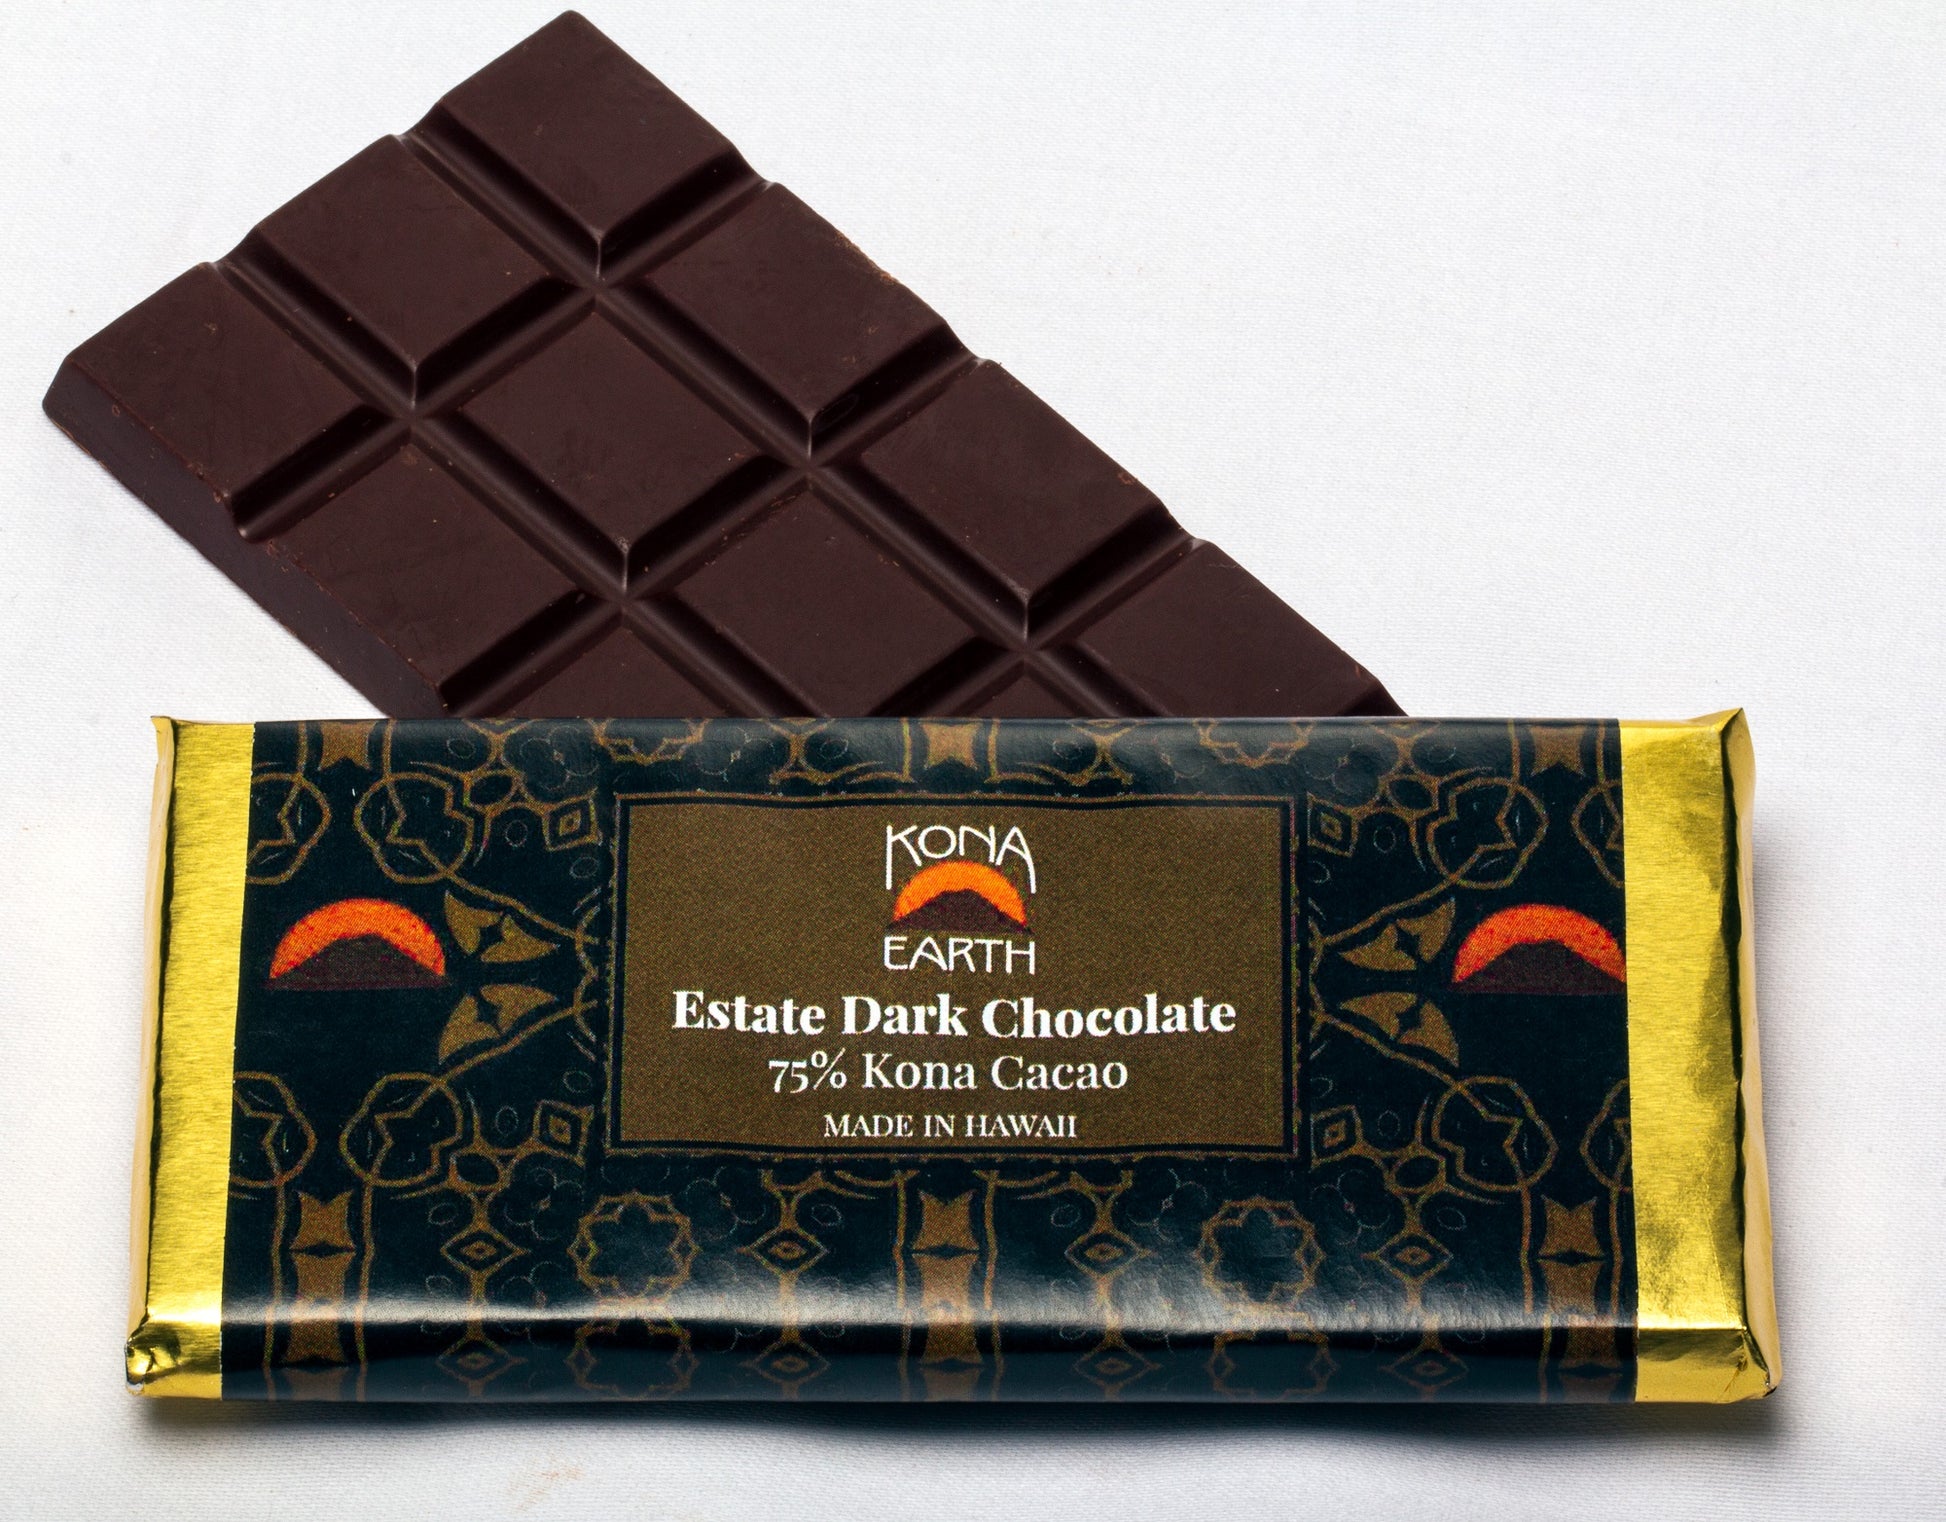 Kona Earth chocolate